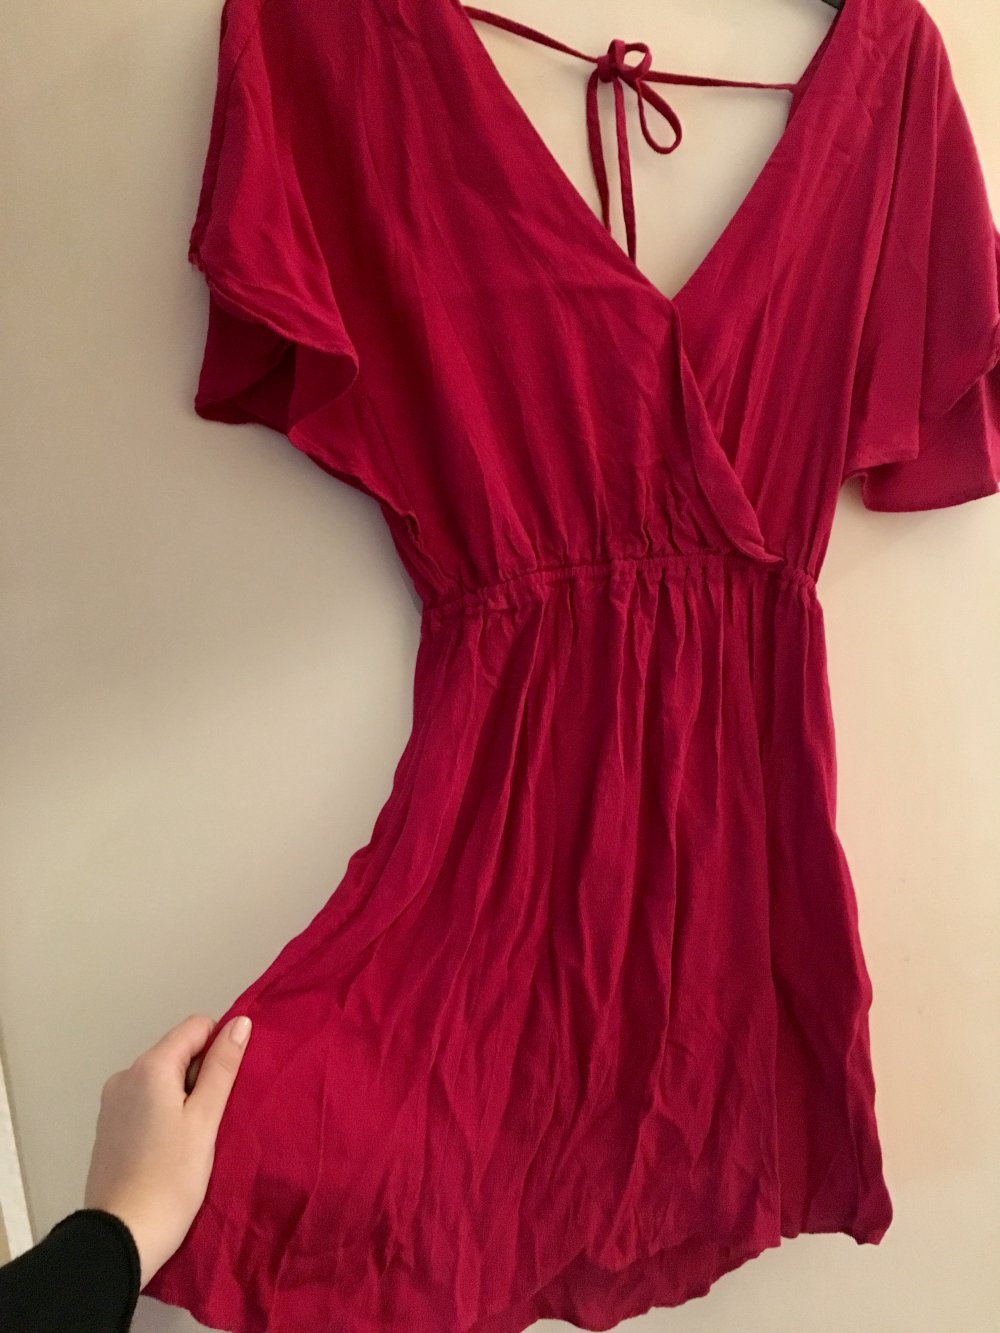 Pinkrotes Kleid mit Rückenausschnitt